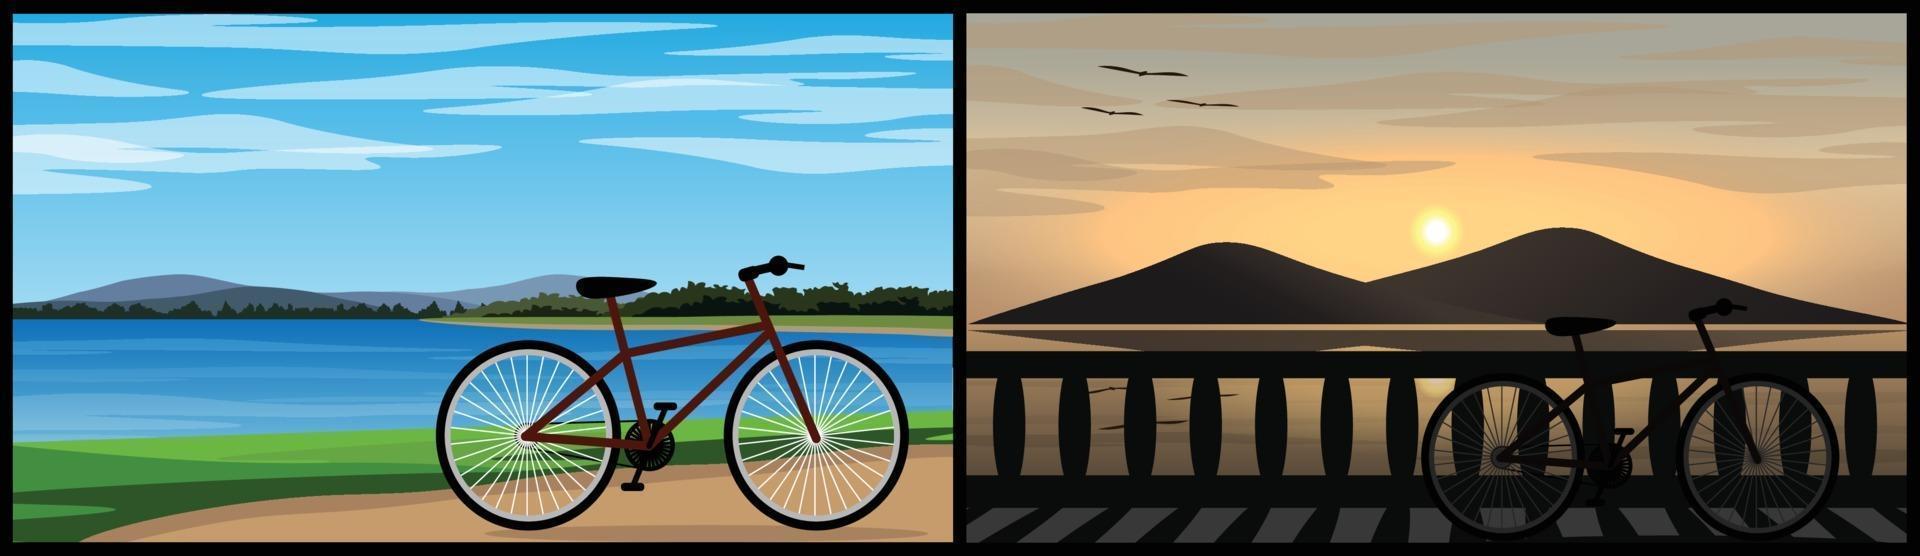 deux images d'un vélo garé près d'un magnifique lac naturel vecteur